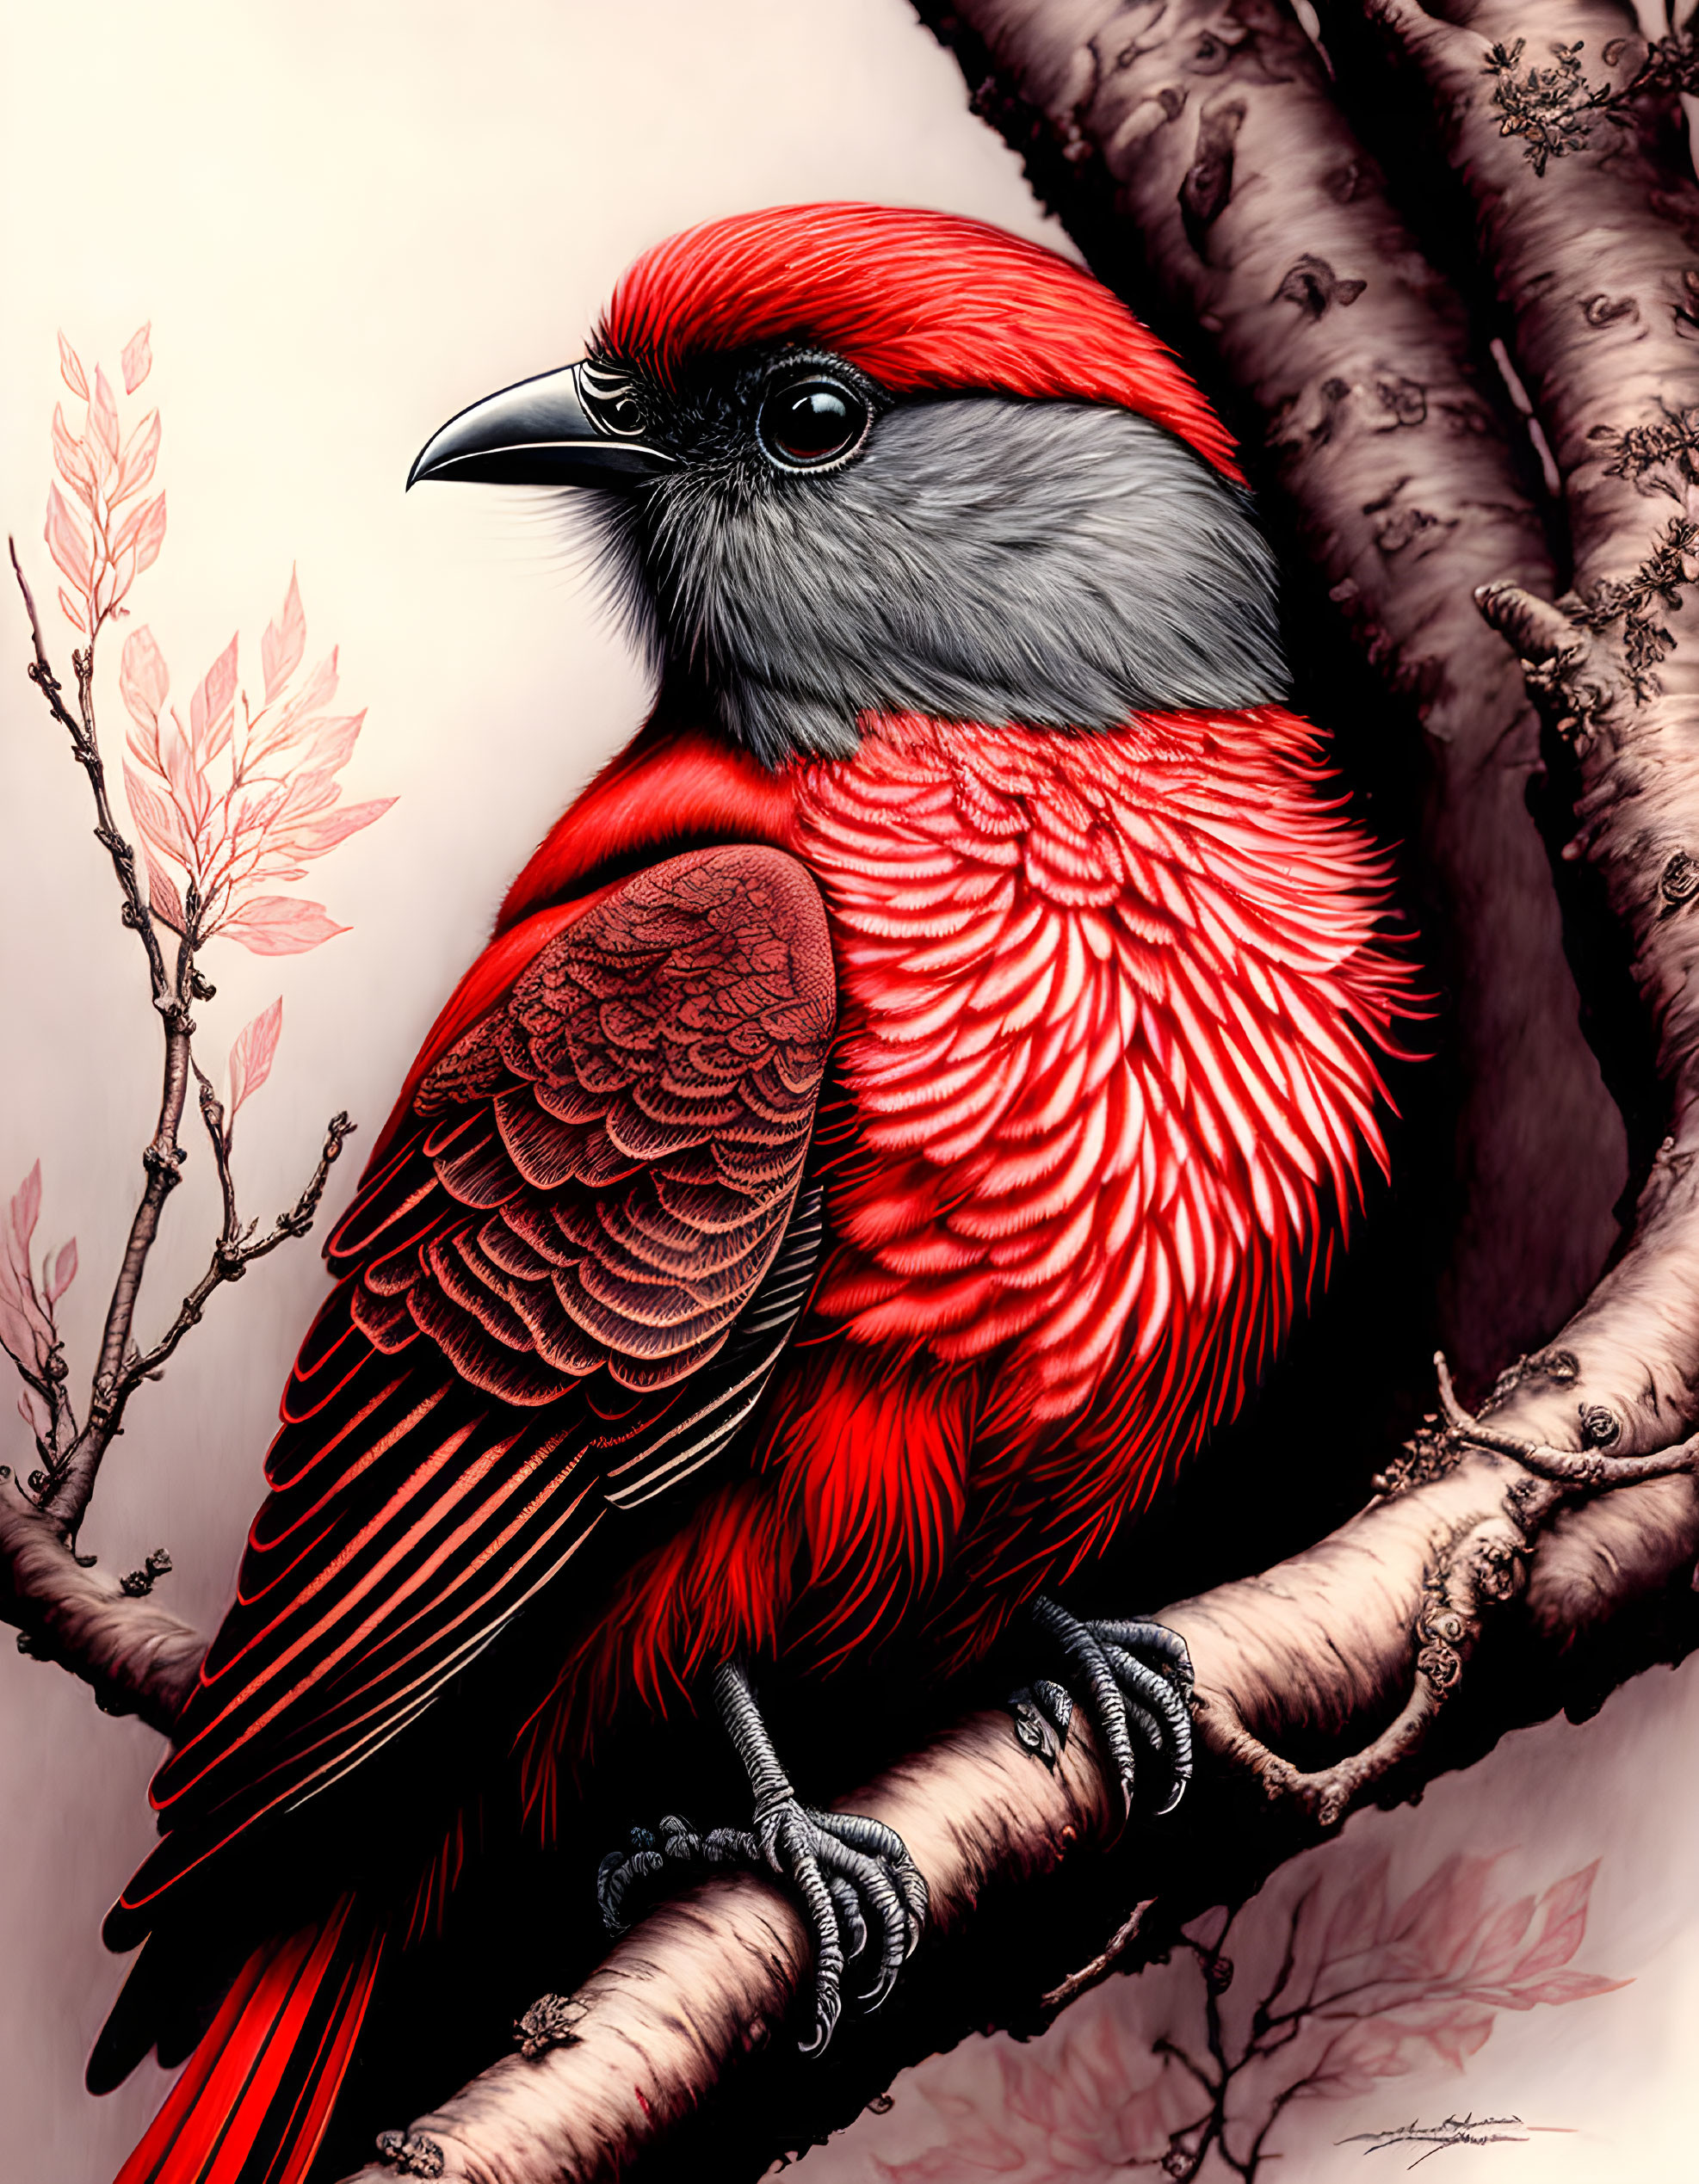 Bird portrait in red tones